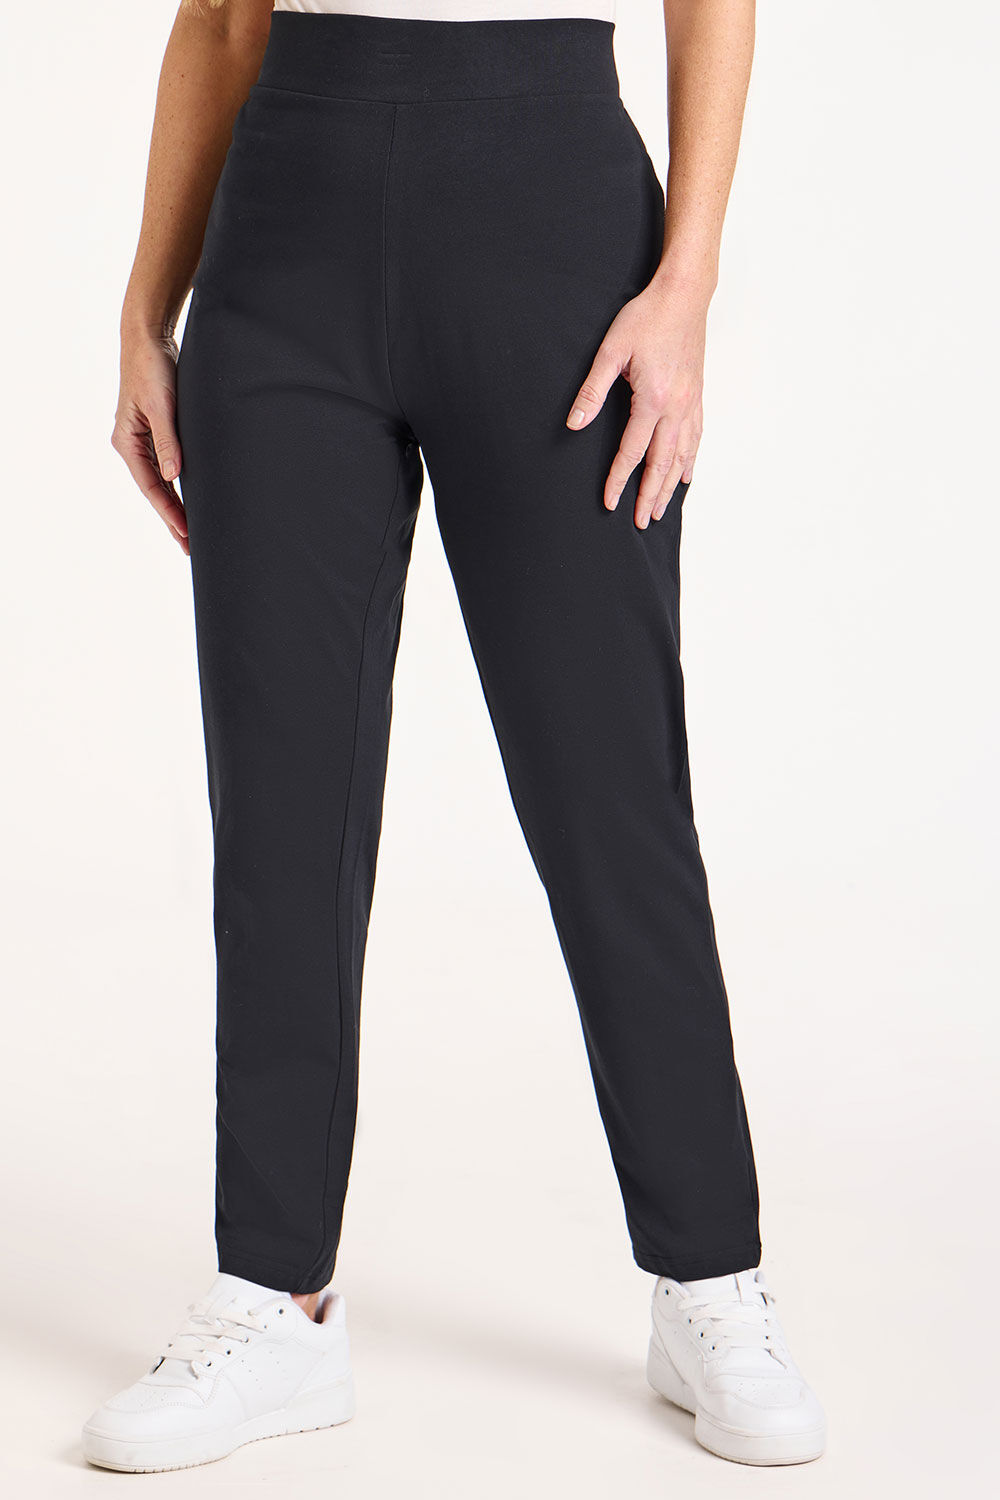 Bonmarche Short Yoga Pants - Black - Size 16